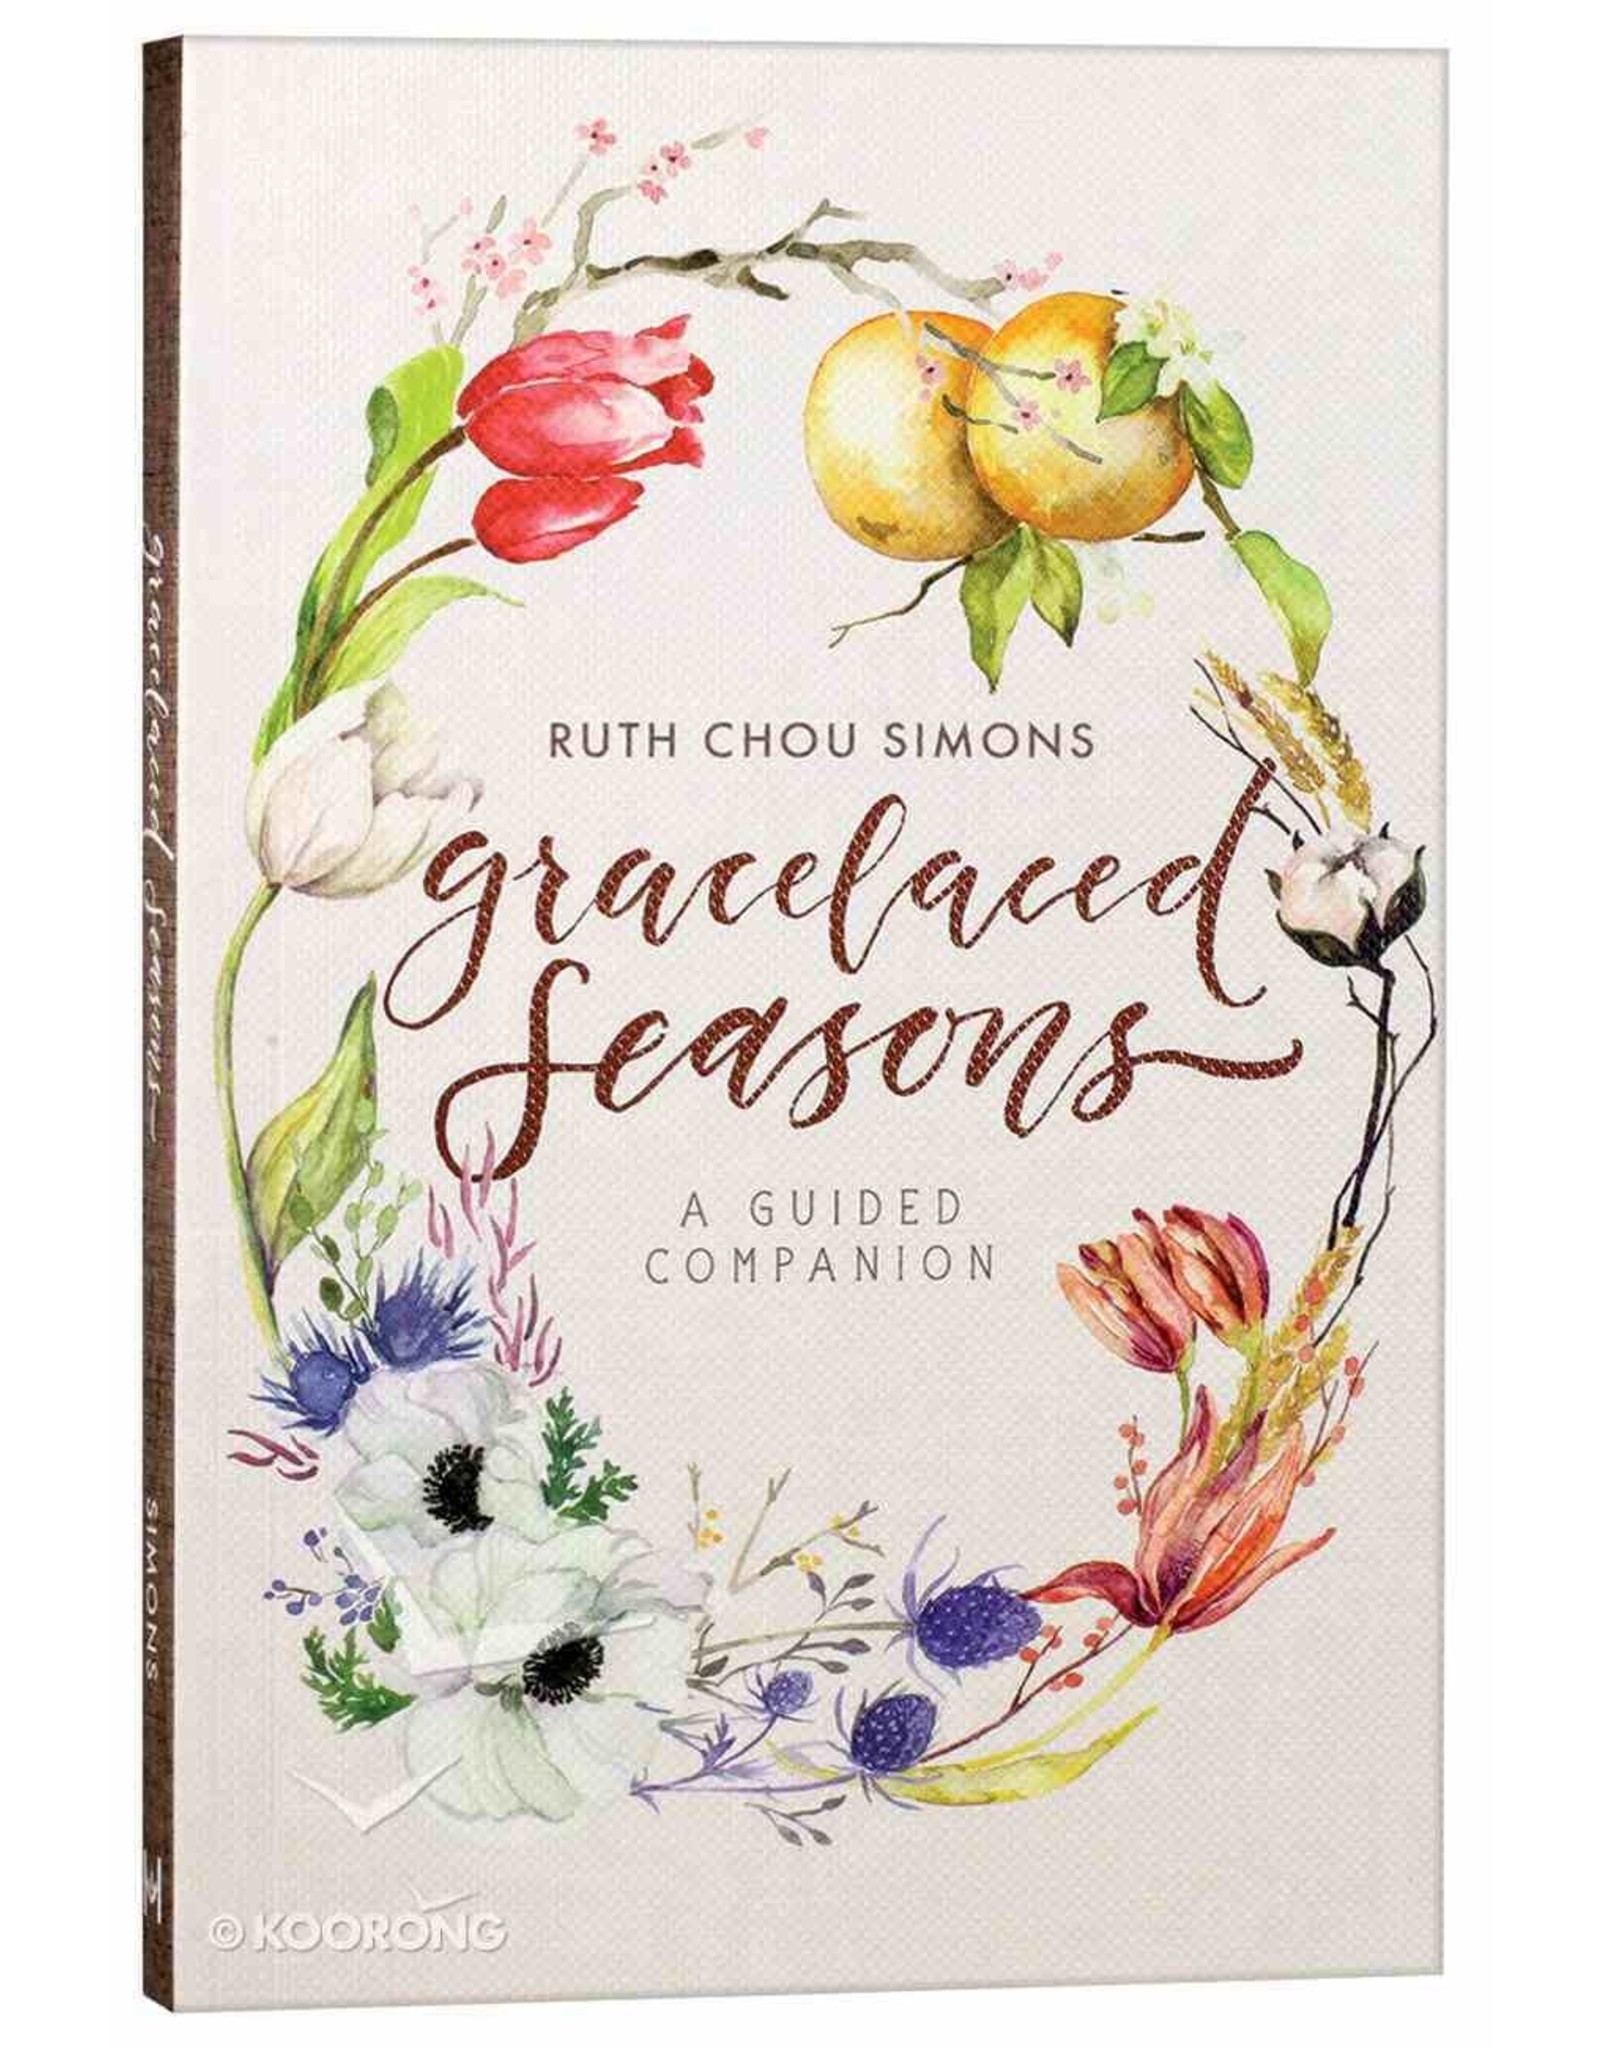 Ruth Chou Simons Gracelaced Seasons - A guided companion